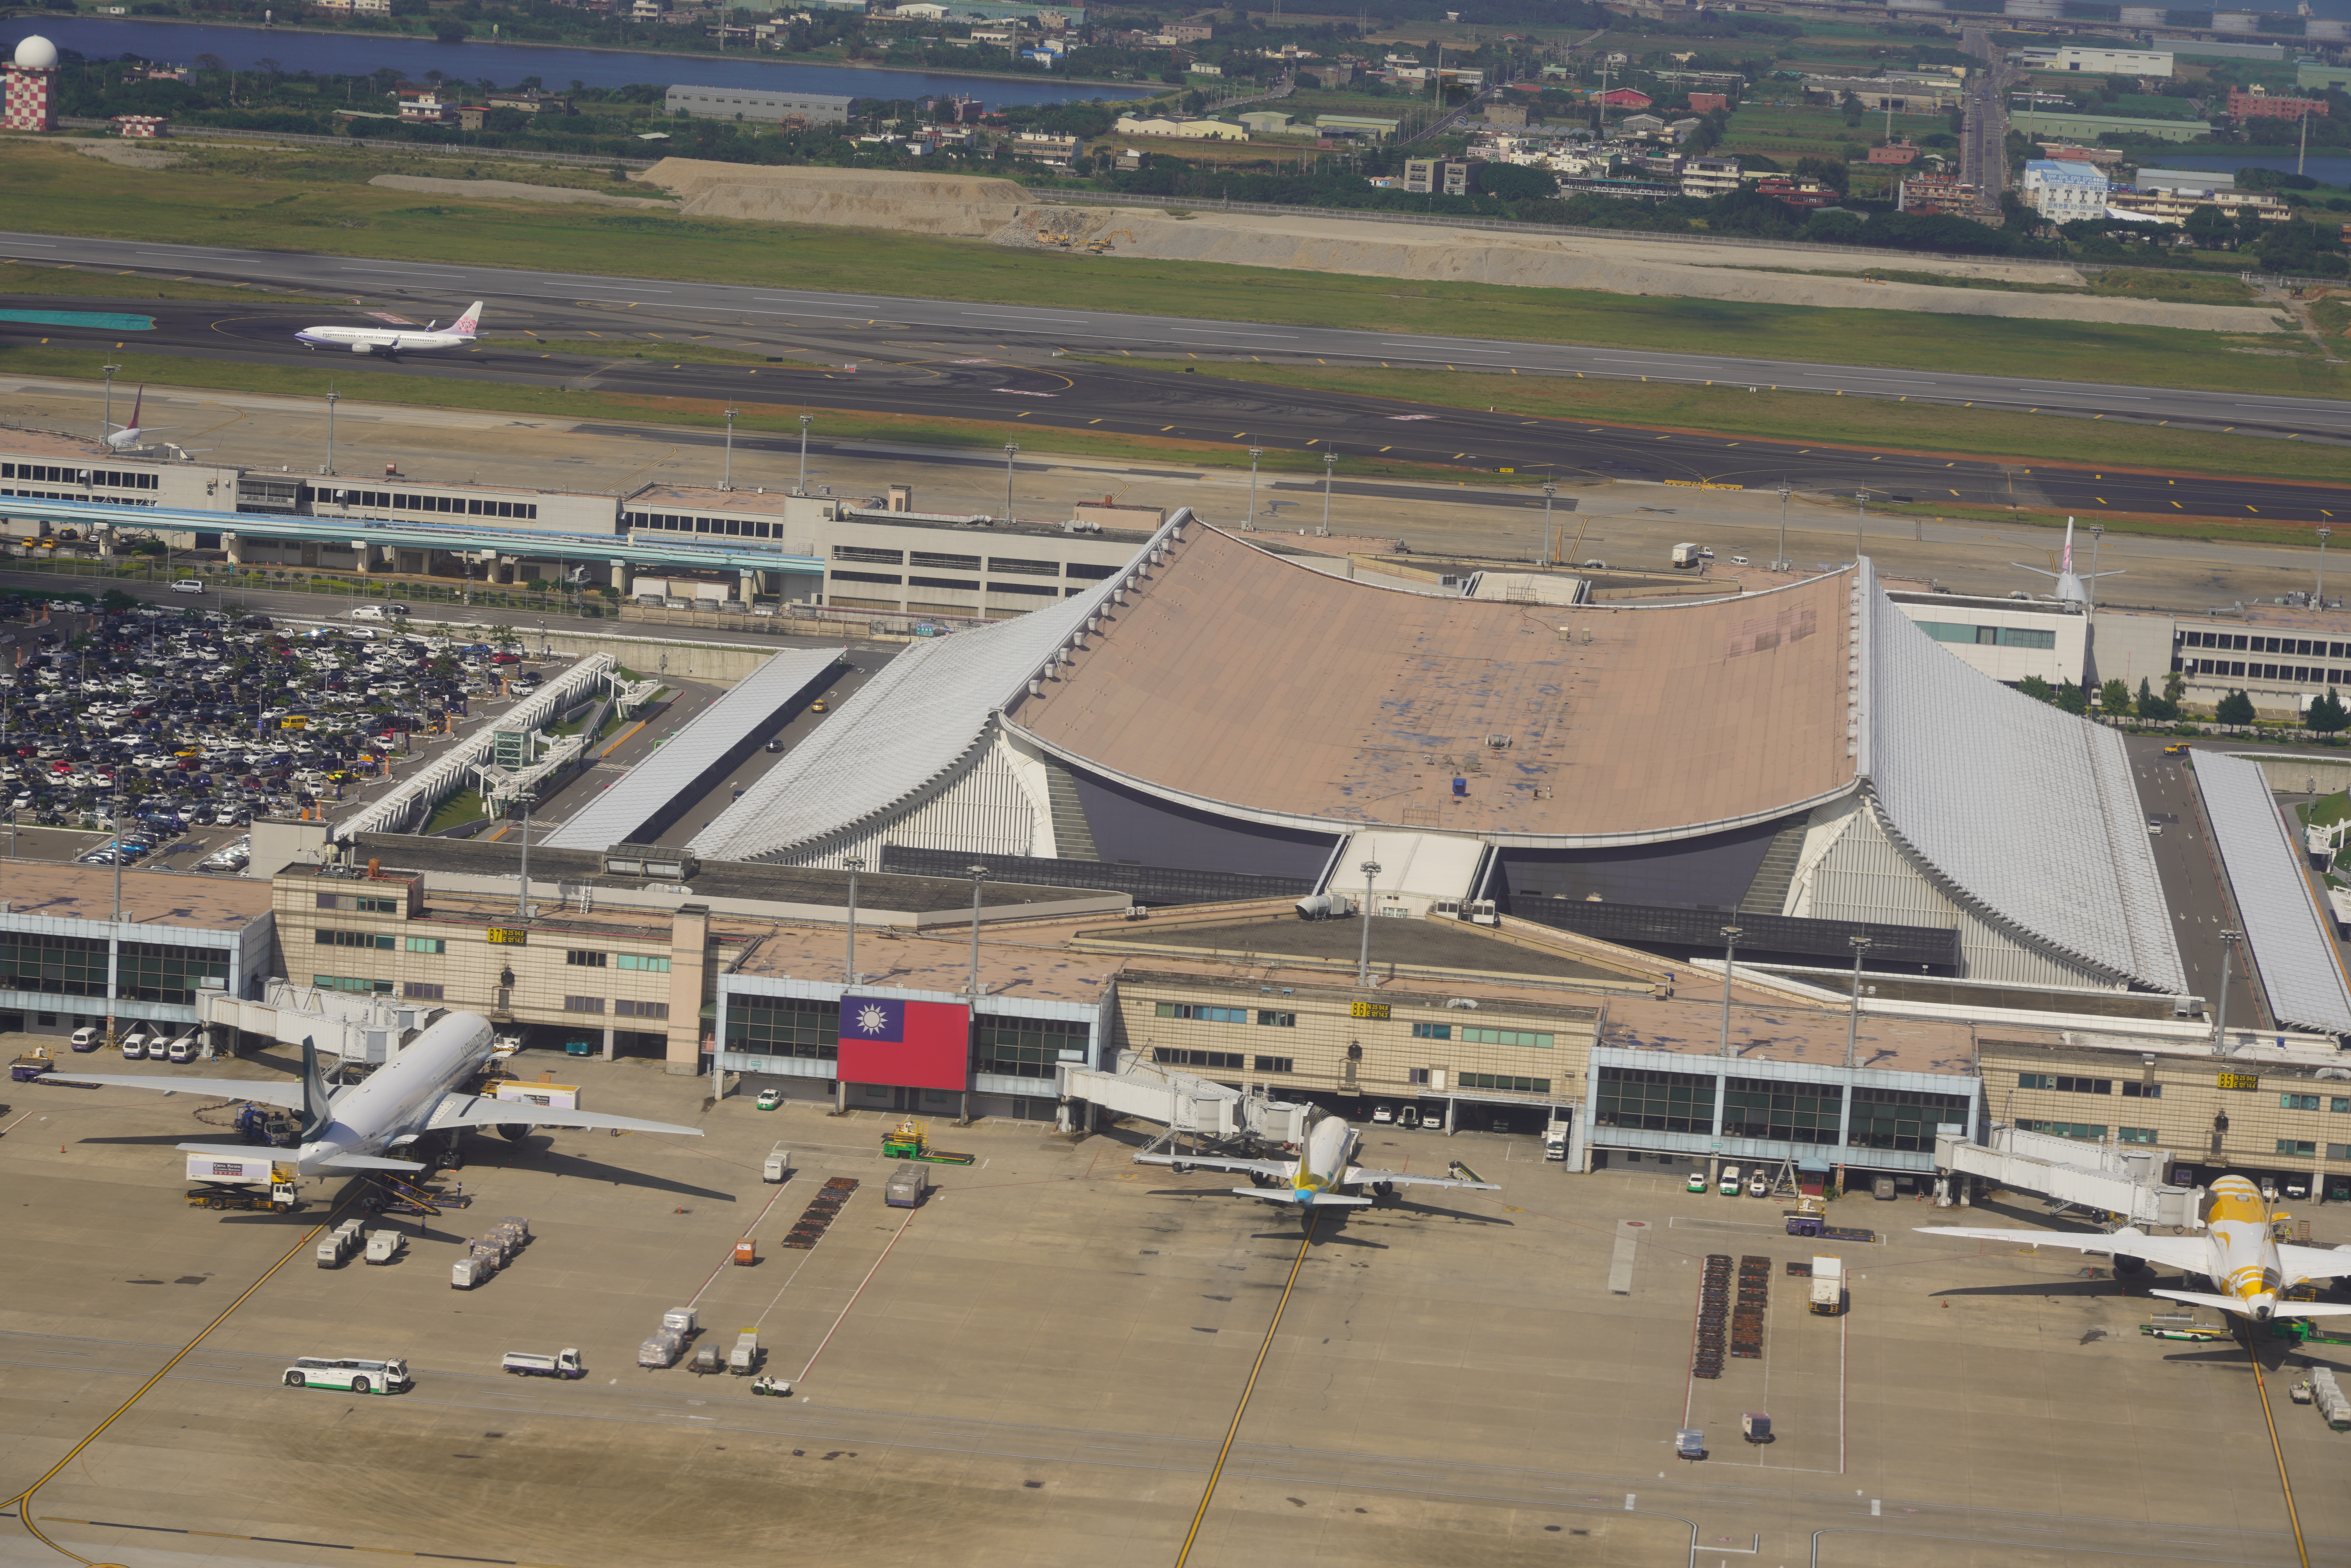 Cierran pista del aeropuerto de Taipéi por sospecha de explosivos en un vuelo